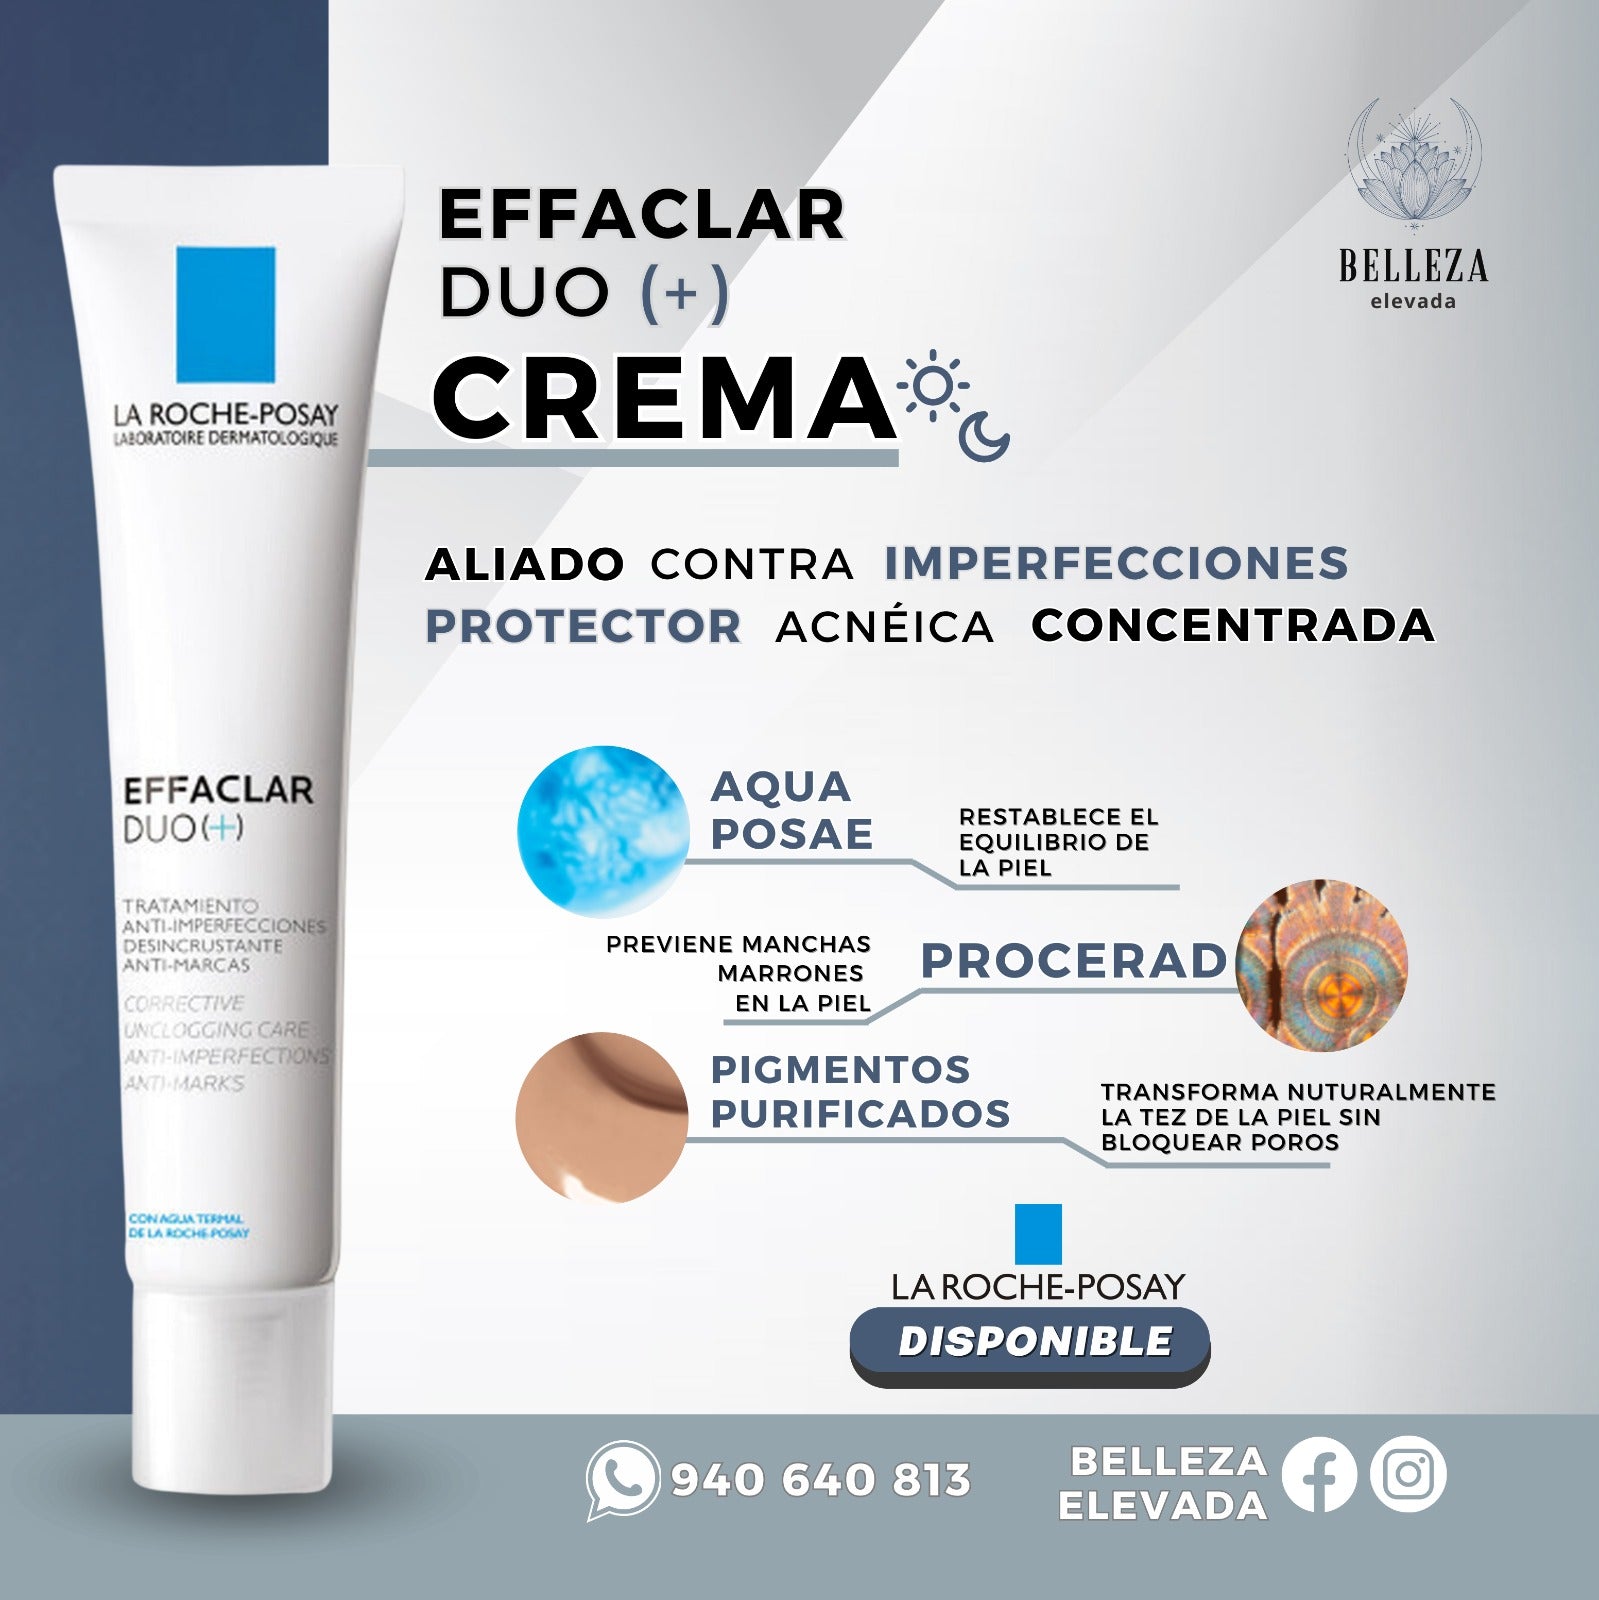 Crema Effaclar Duo (+) (40 ml) Aliado contra imperfecciones La Roche-Posay